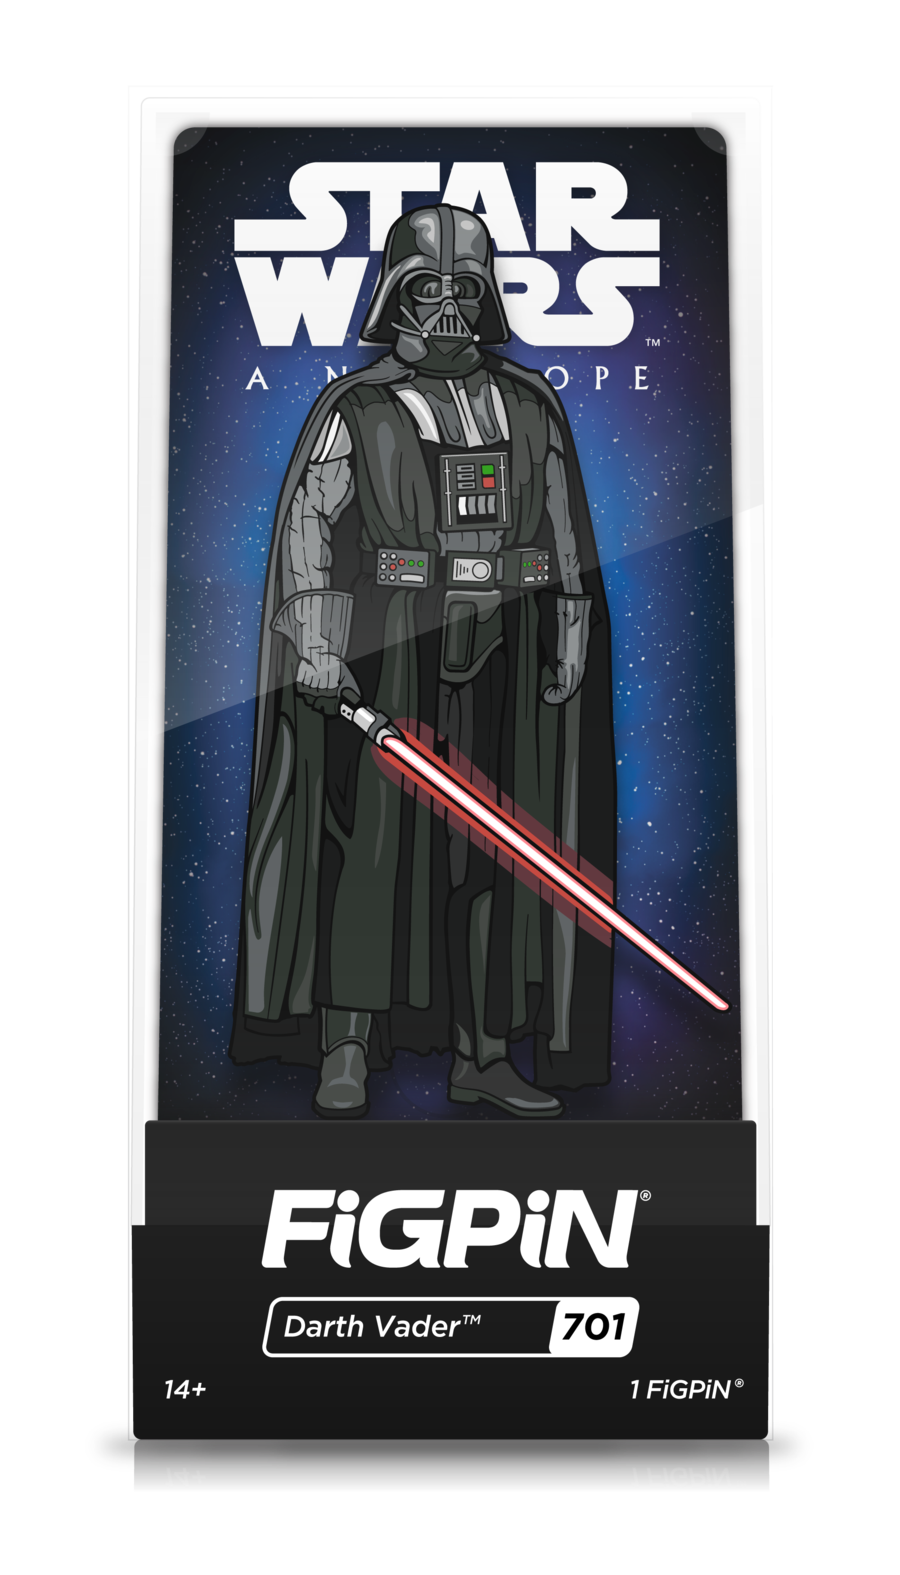 FiGPiN Star Wars A New Hope Darth Vader